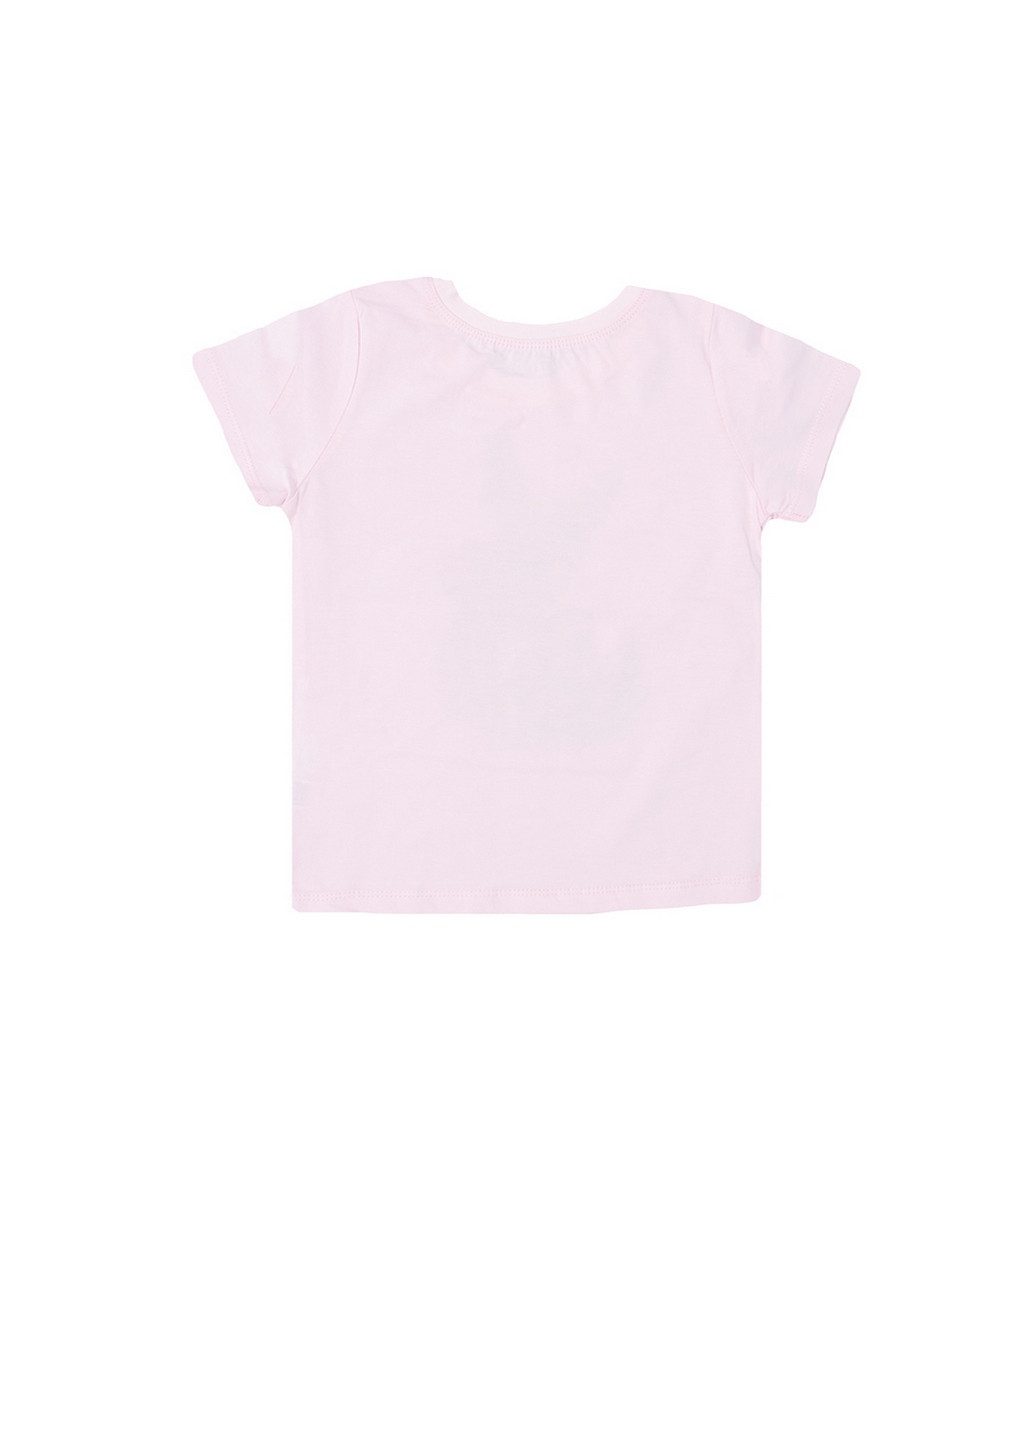 Светло-розовая летняя футболка для девочки короткий рукав Фламинго Текстиль